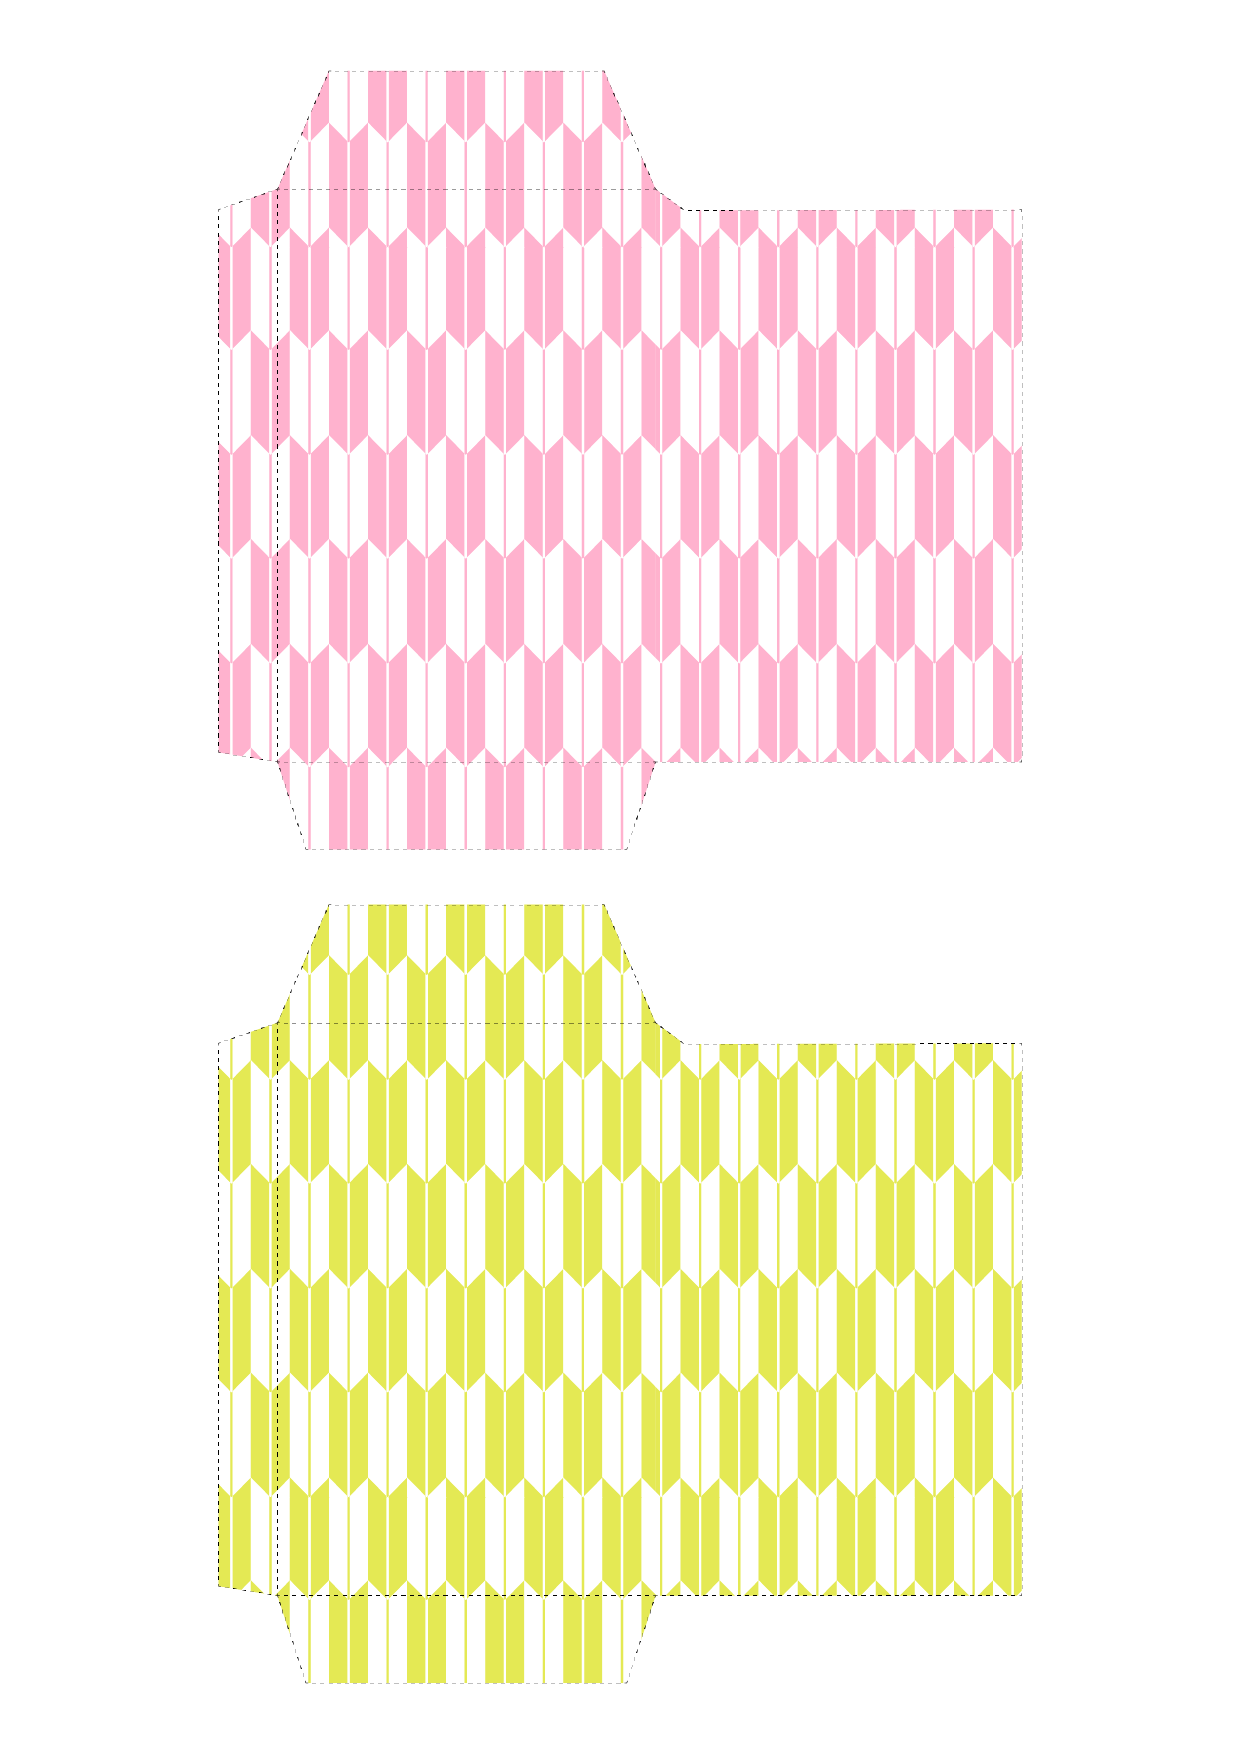 ポチ袋 お年玉袋 のテンプレート 和柄 矢絣 ピンク 黄 イラスト 商用フリー 無料 のイラスト素材なら イラストマンション